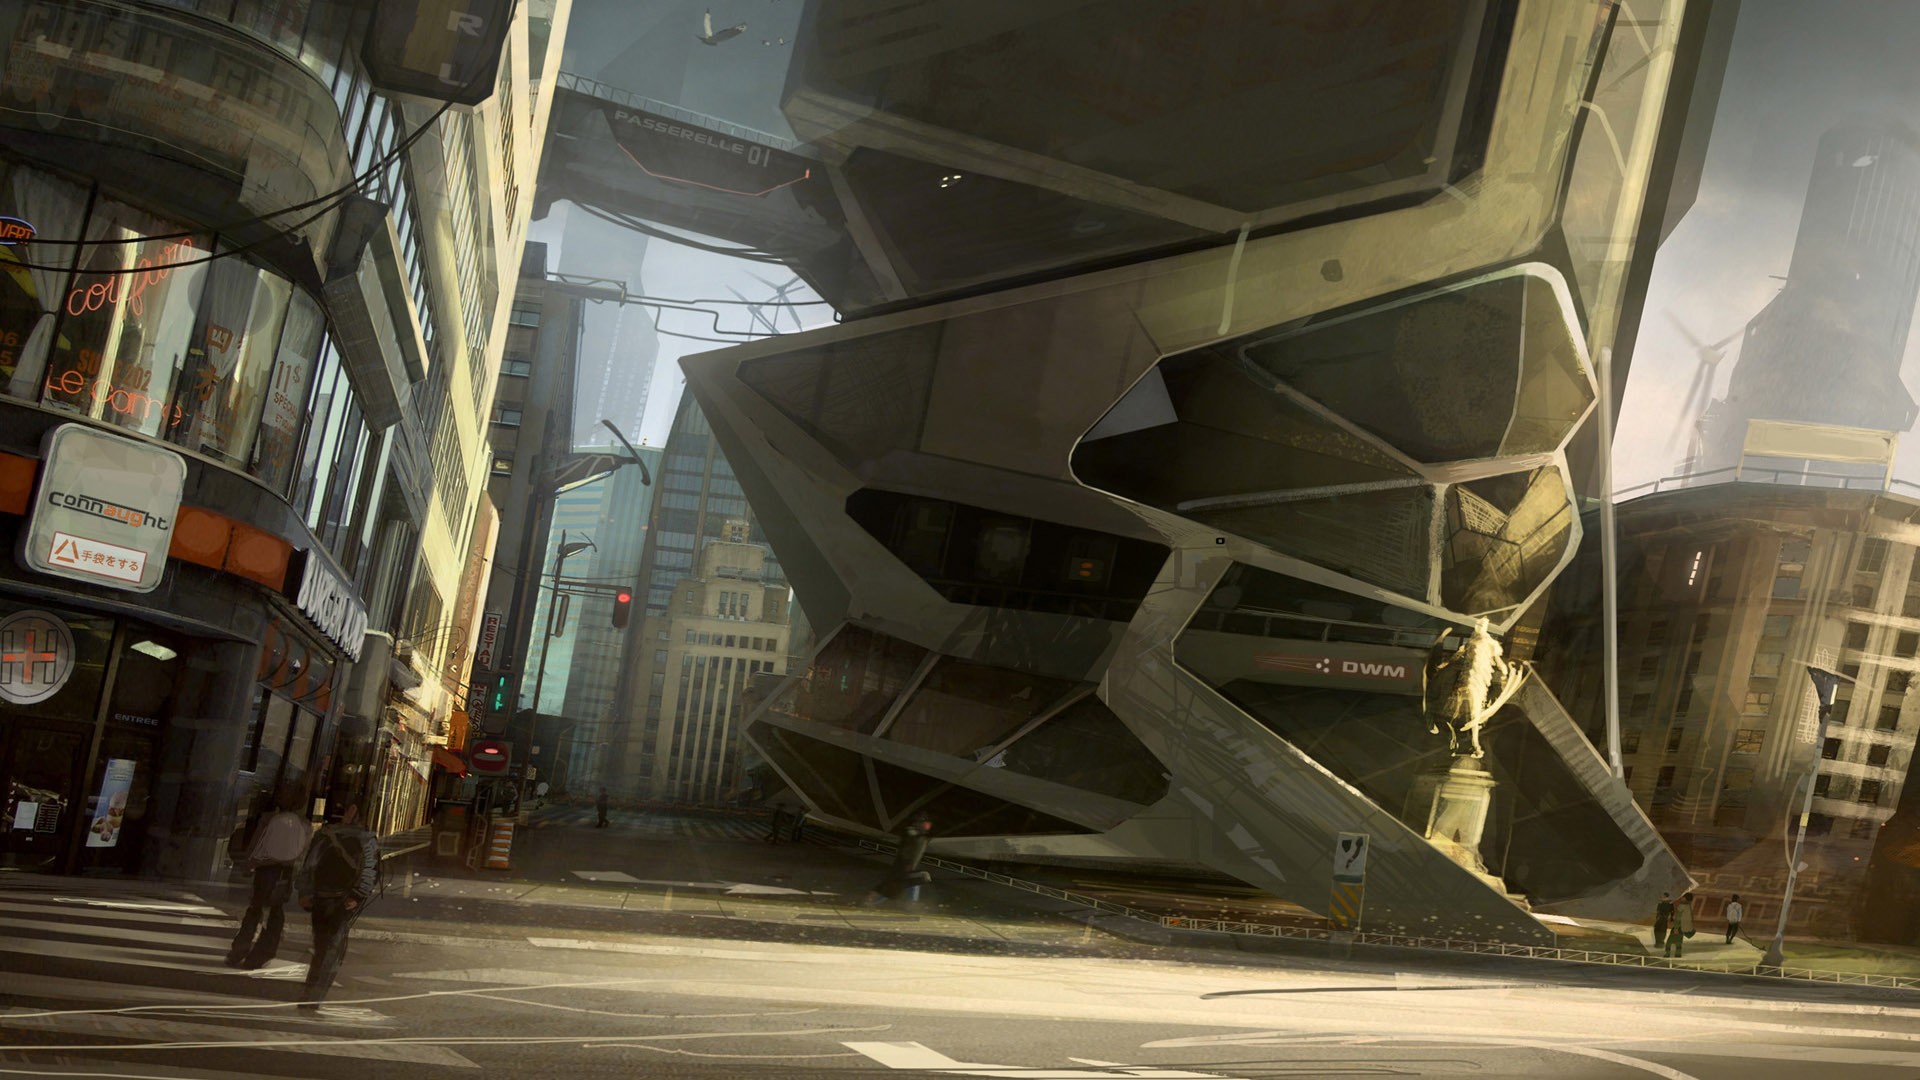 General 1920x1080 science fiction Deus Ex video games PC gaming futuristic futuristic city